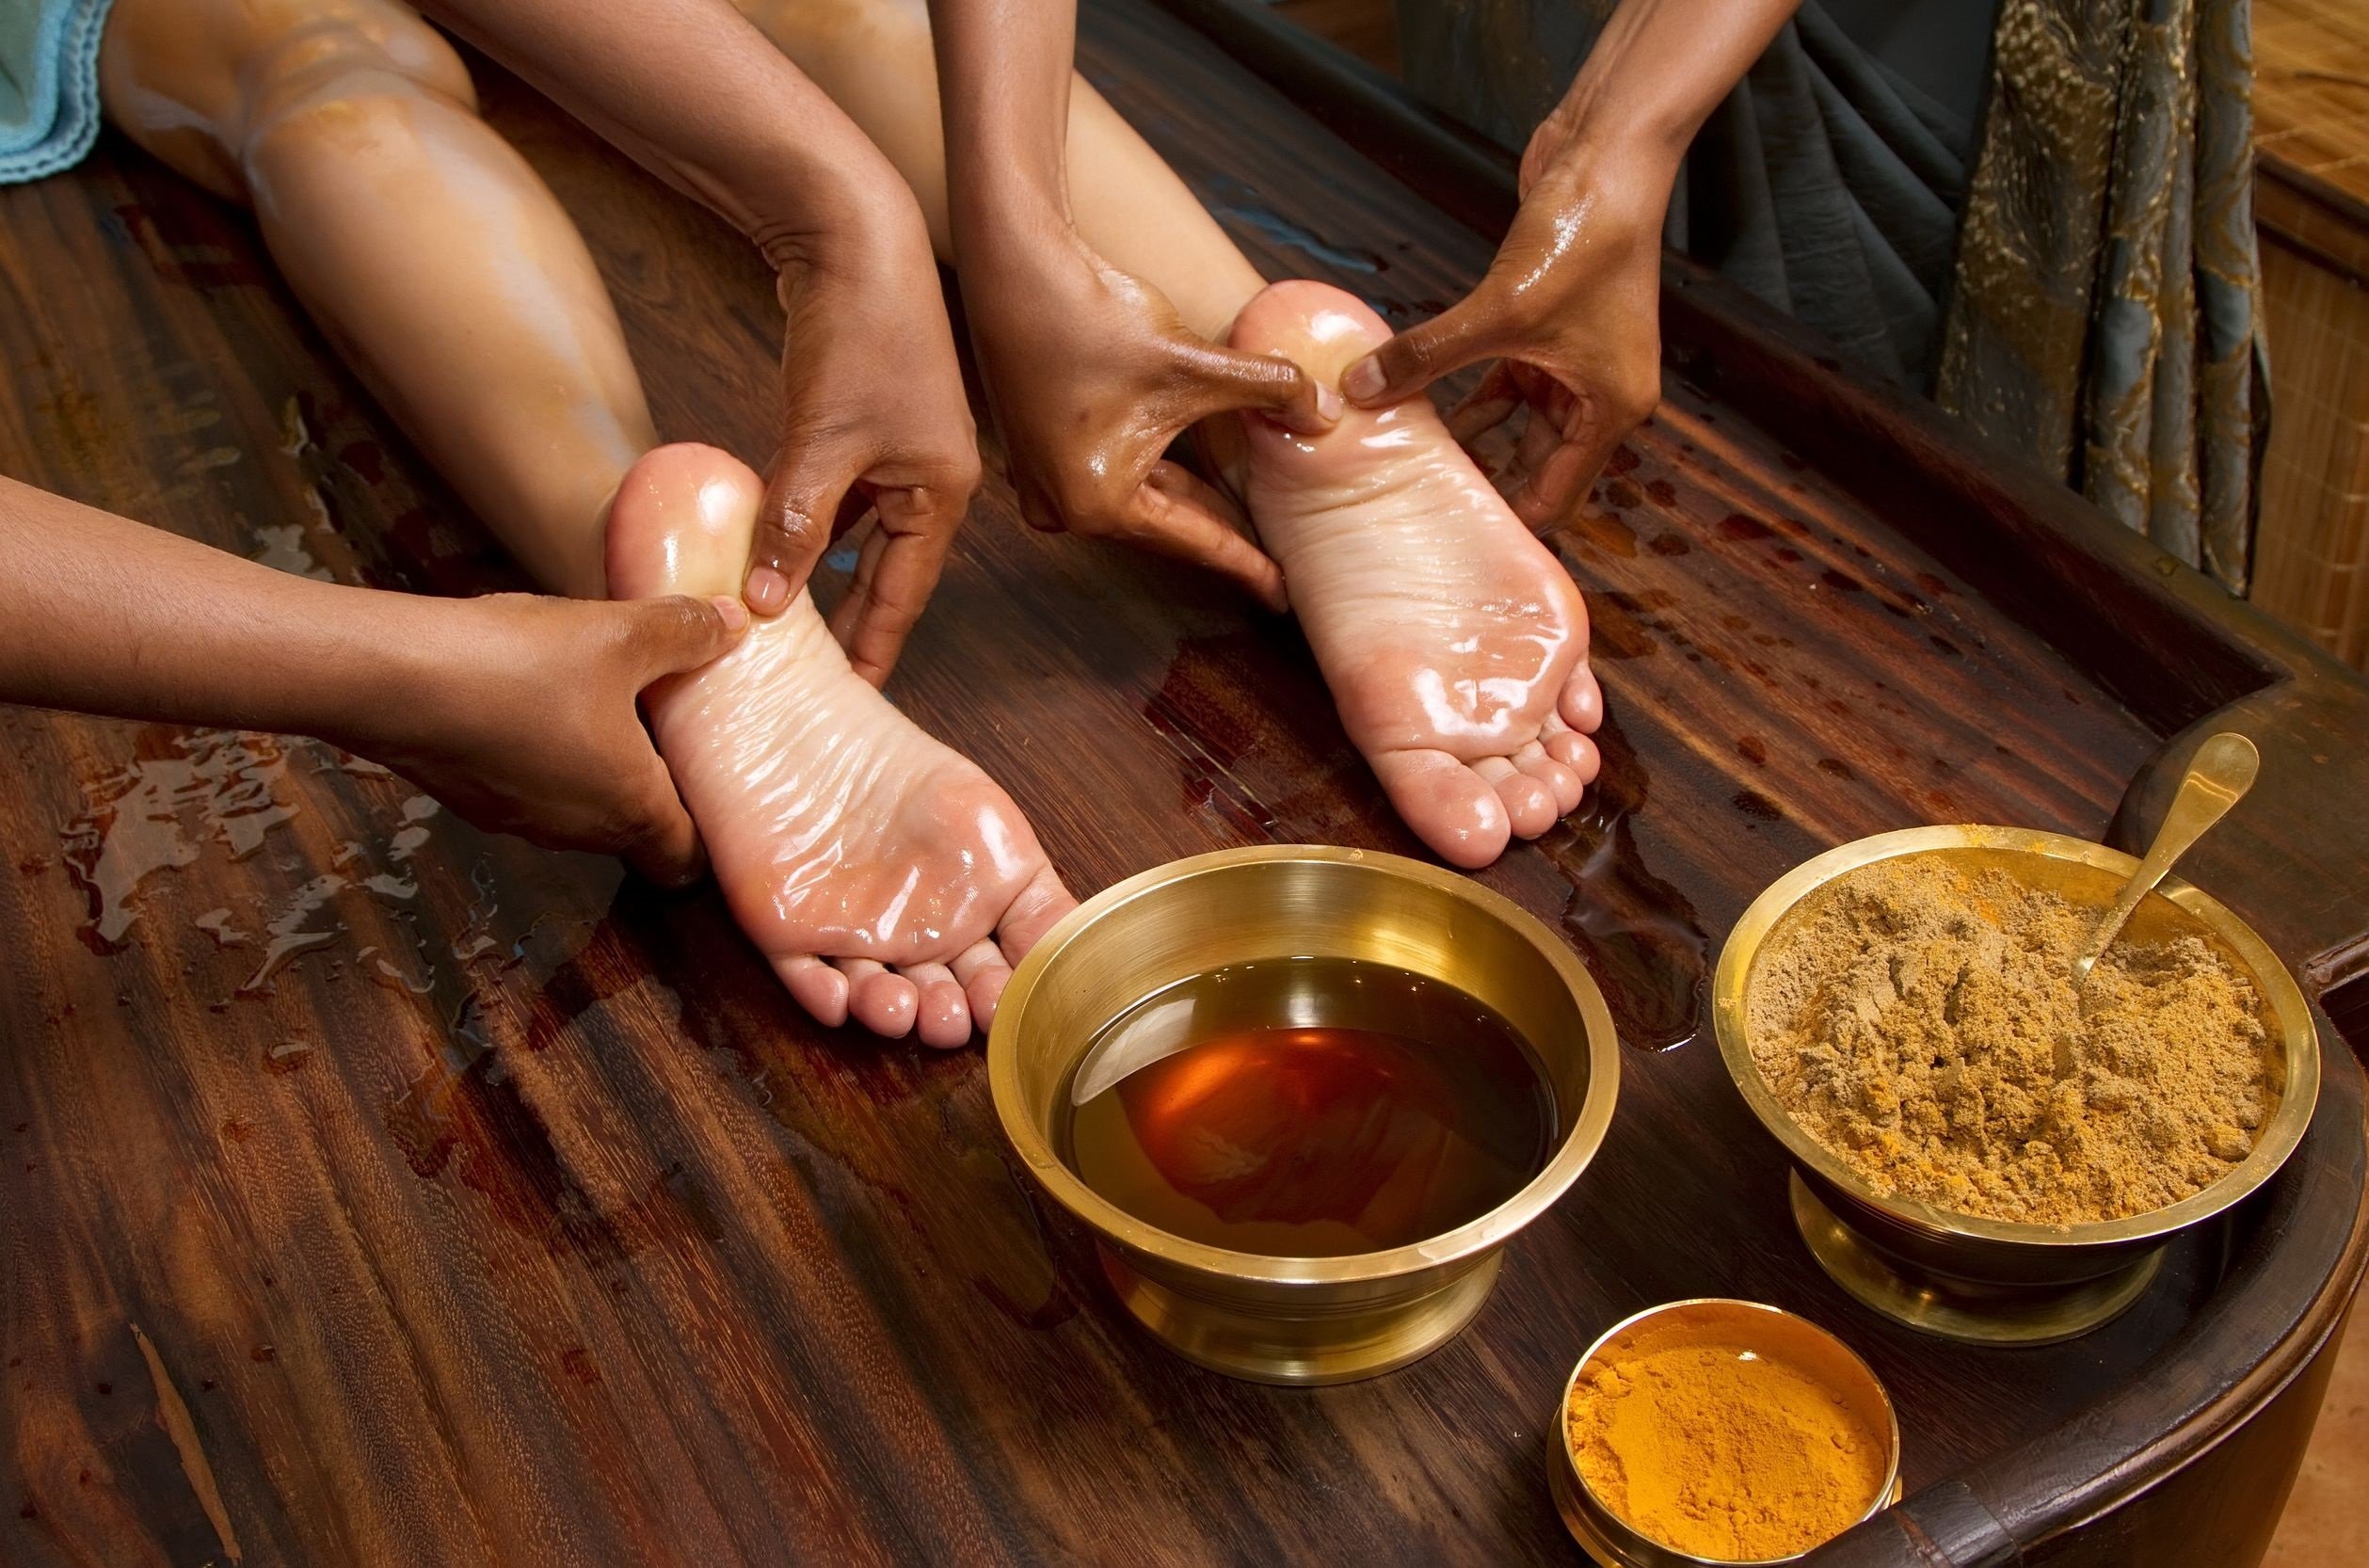 Foot massage - Lợi ích của massage chân đối với sức khỏe